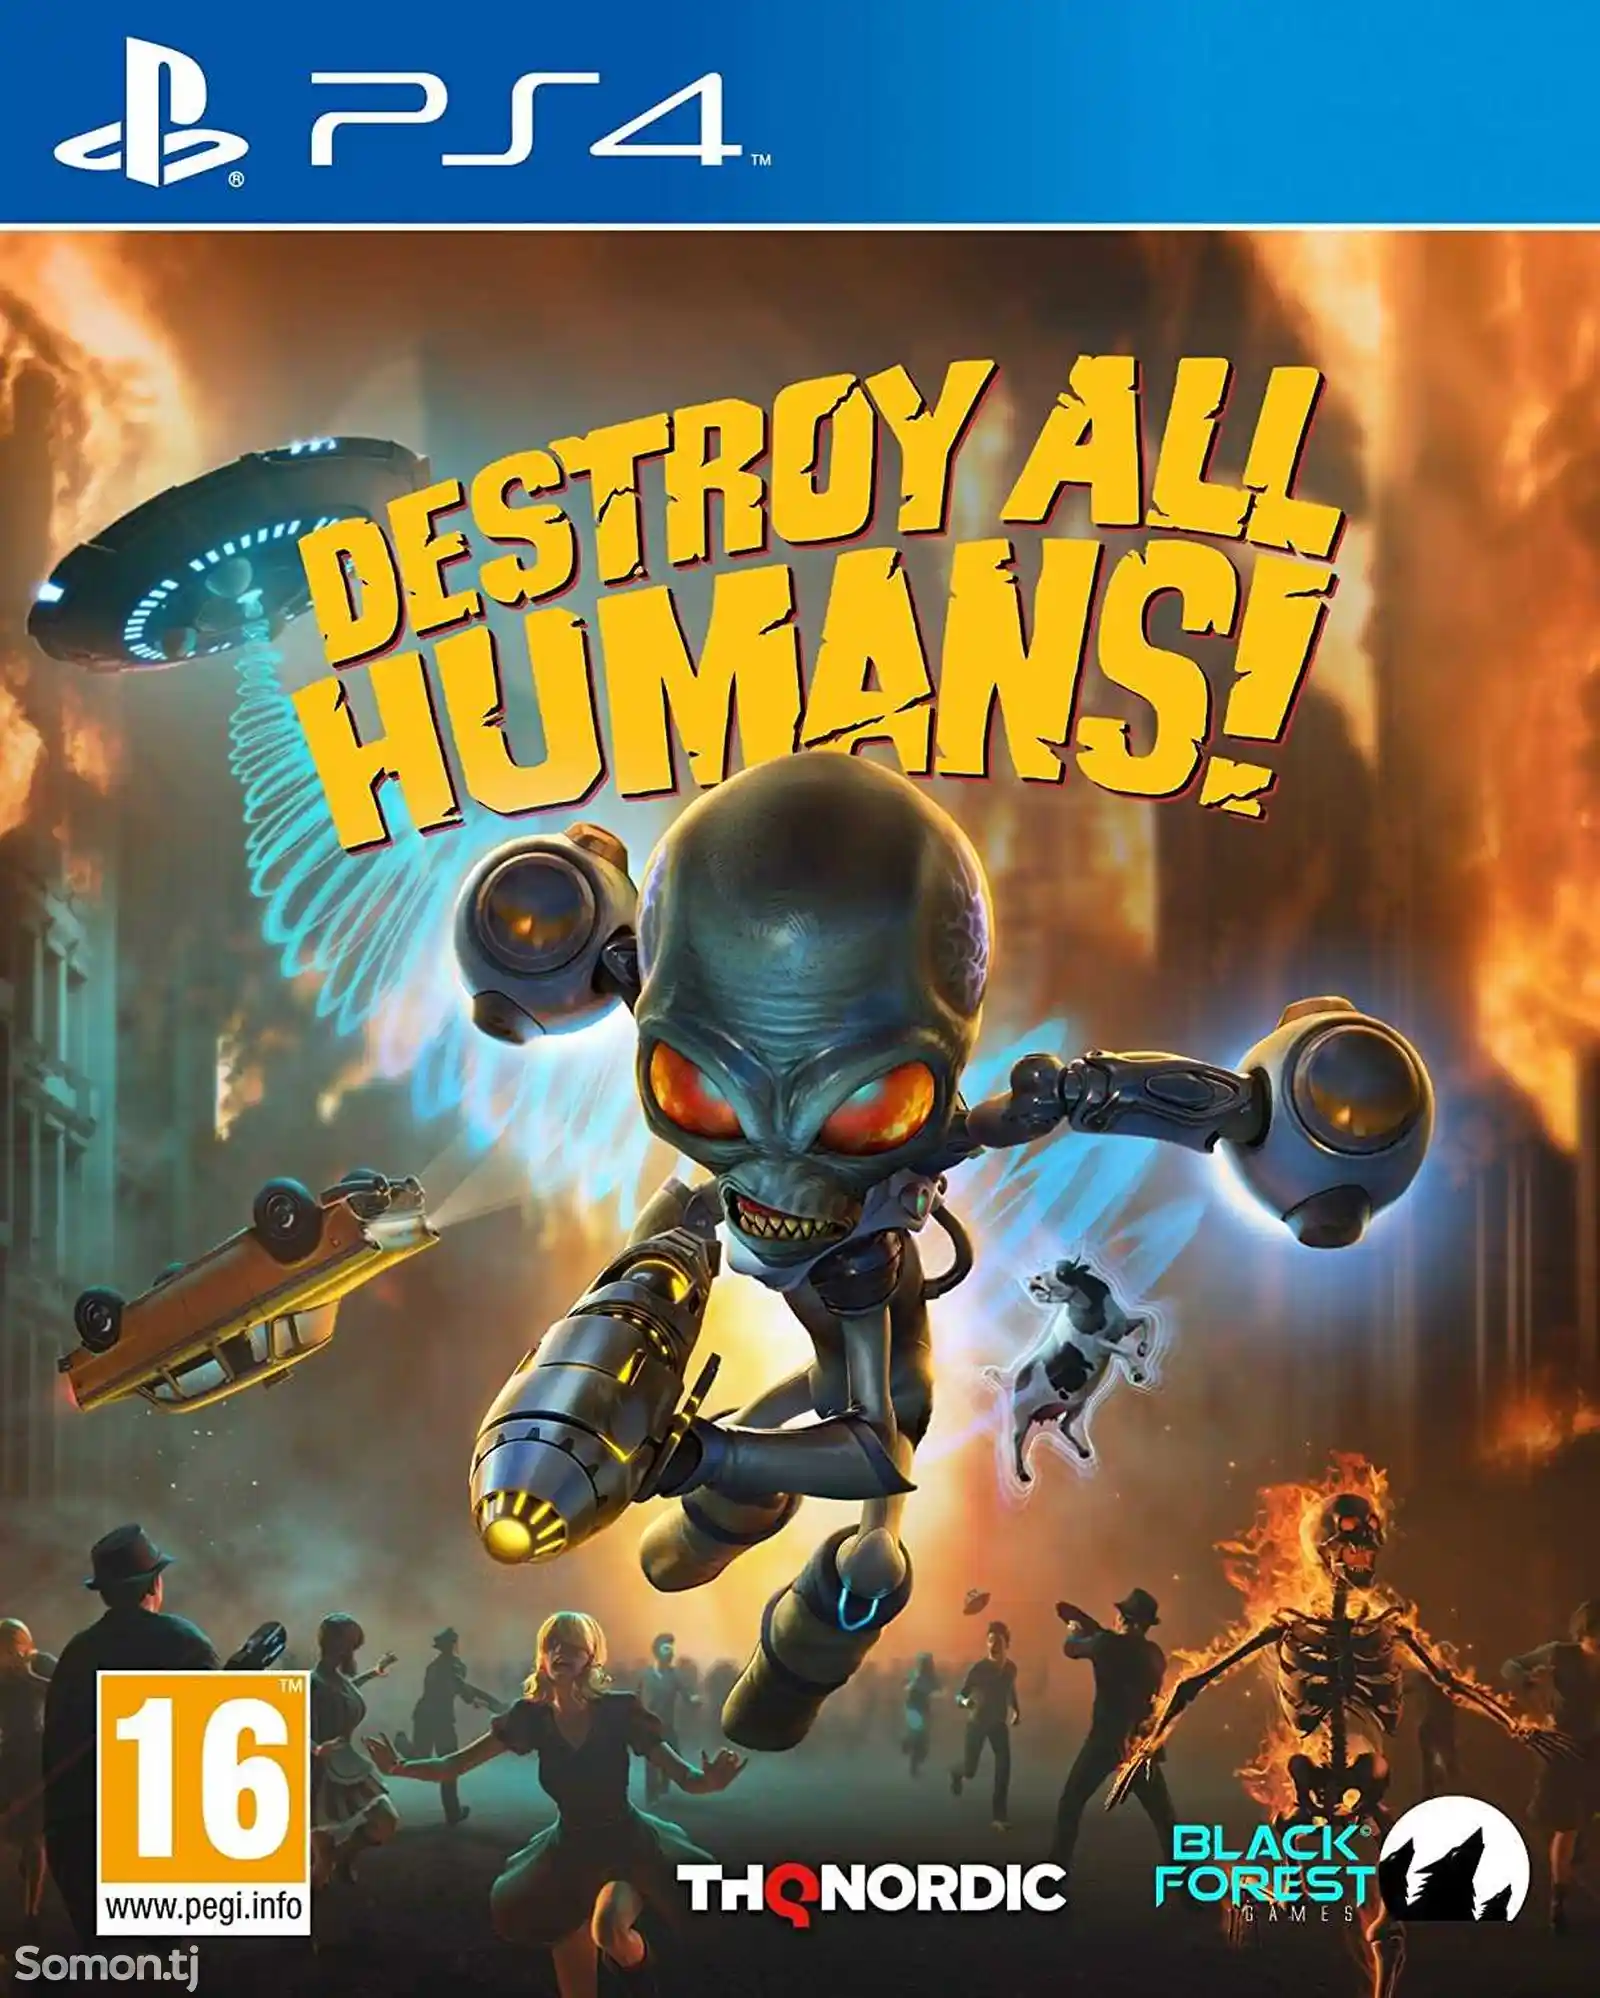 Игра Destroy All Humans Remake для PS4